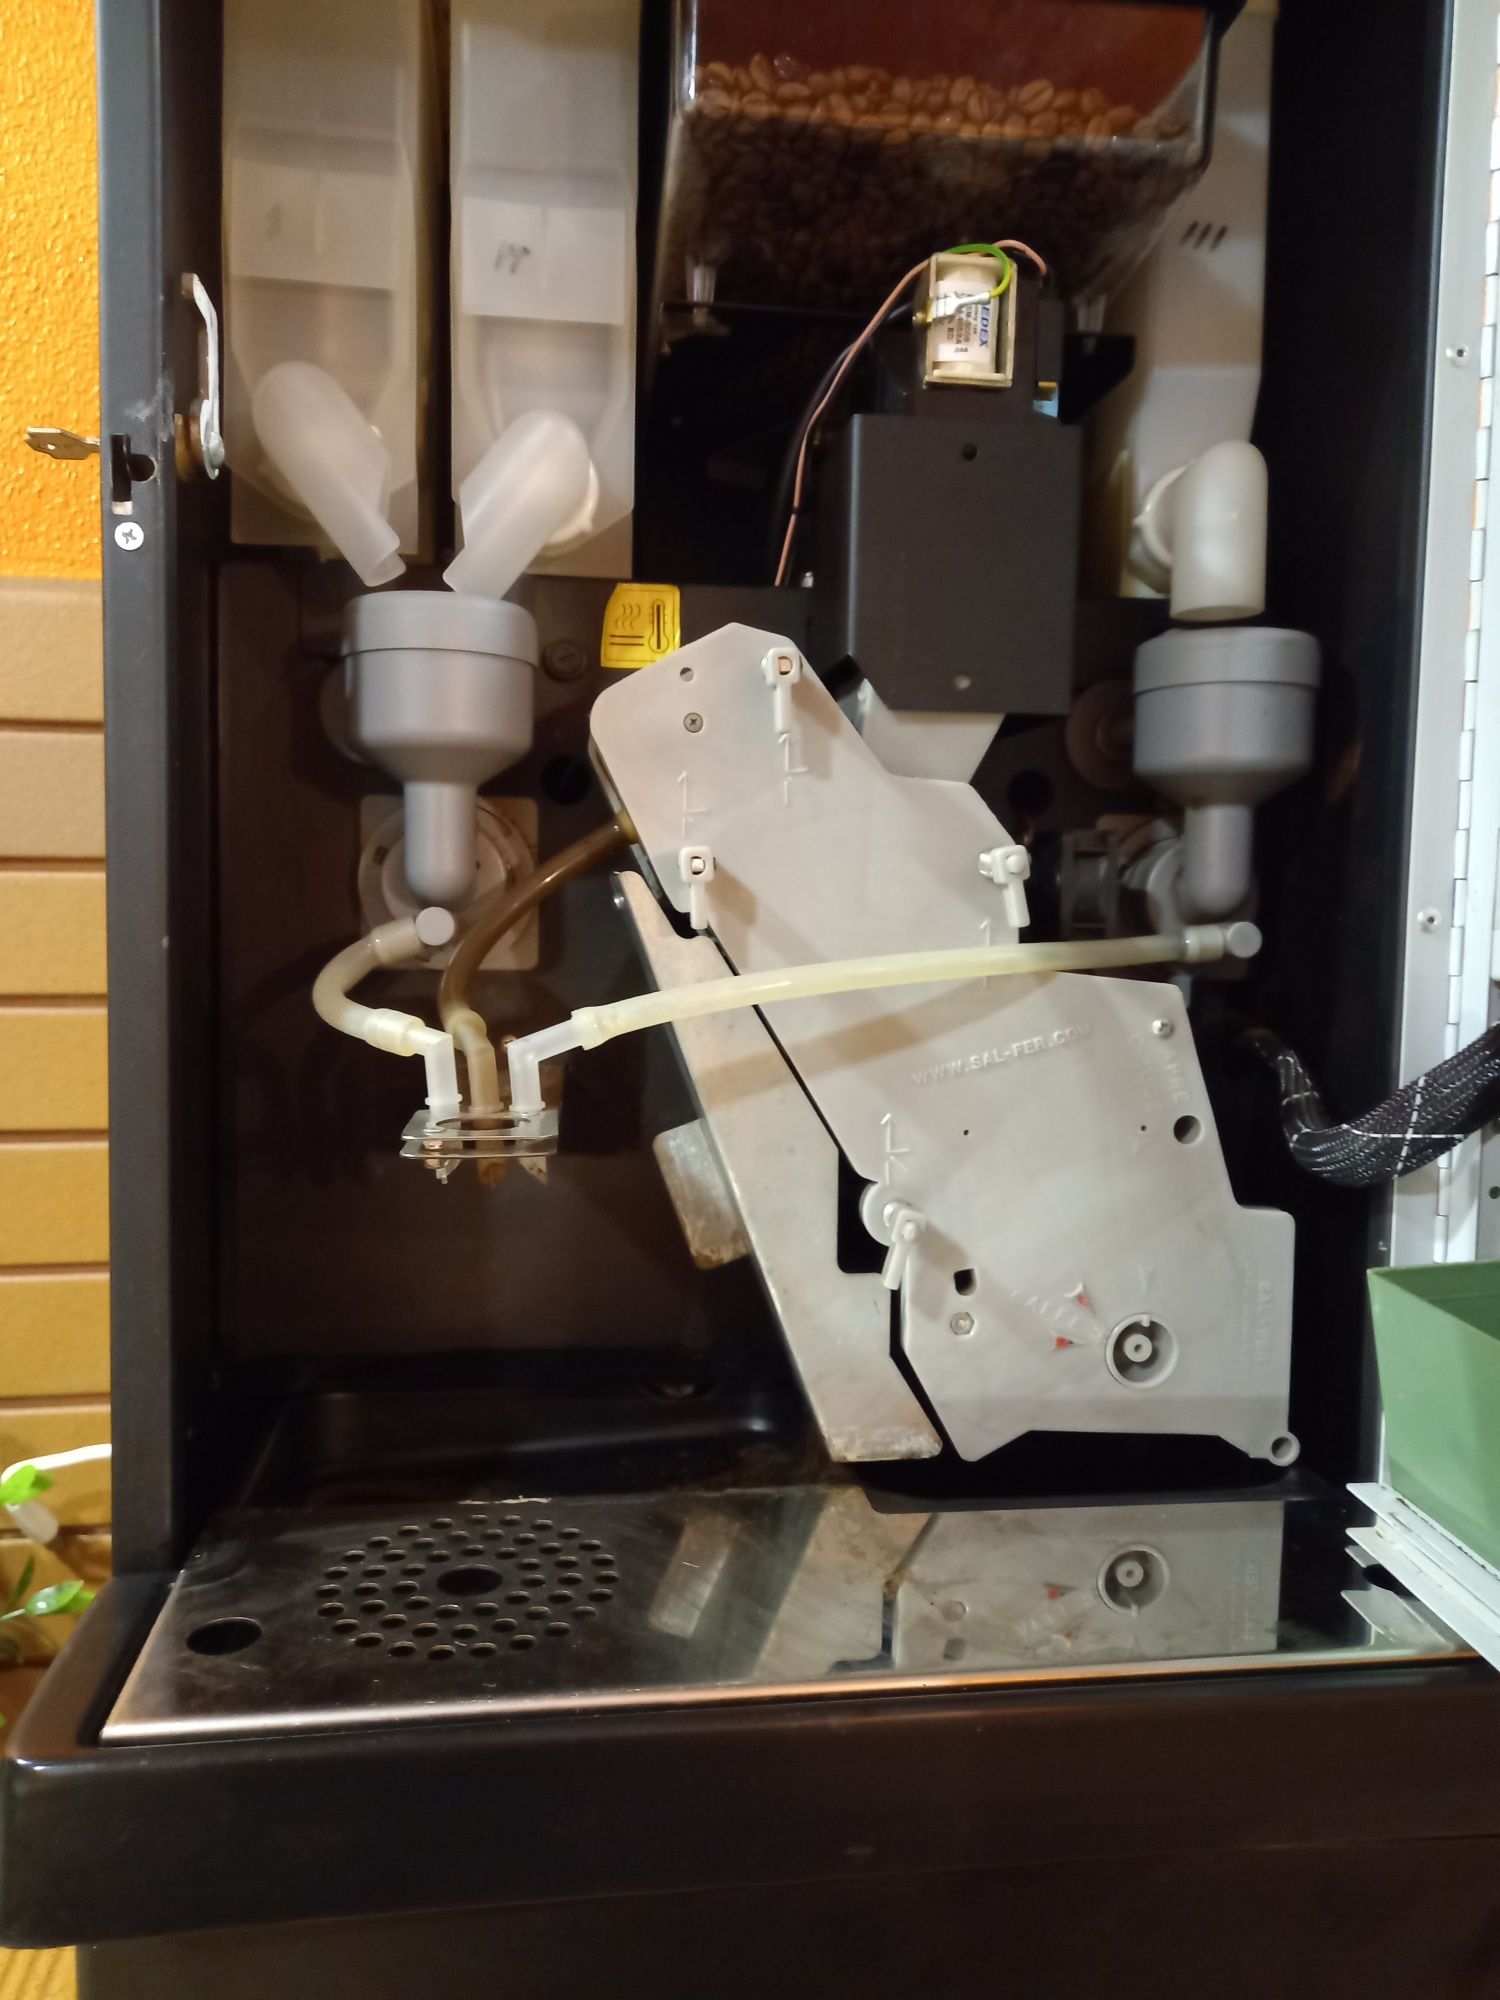 Maquina de cafe de Vending